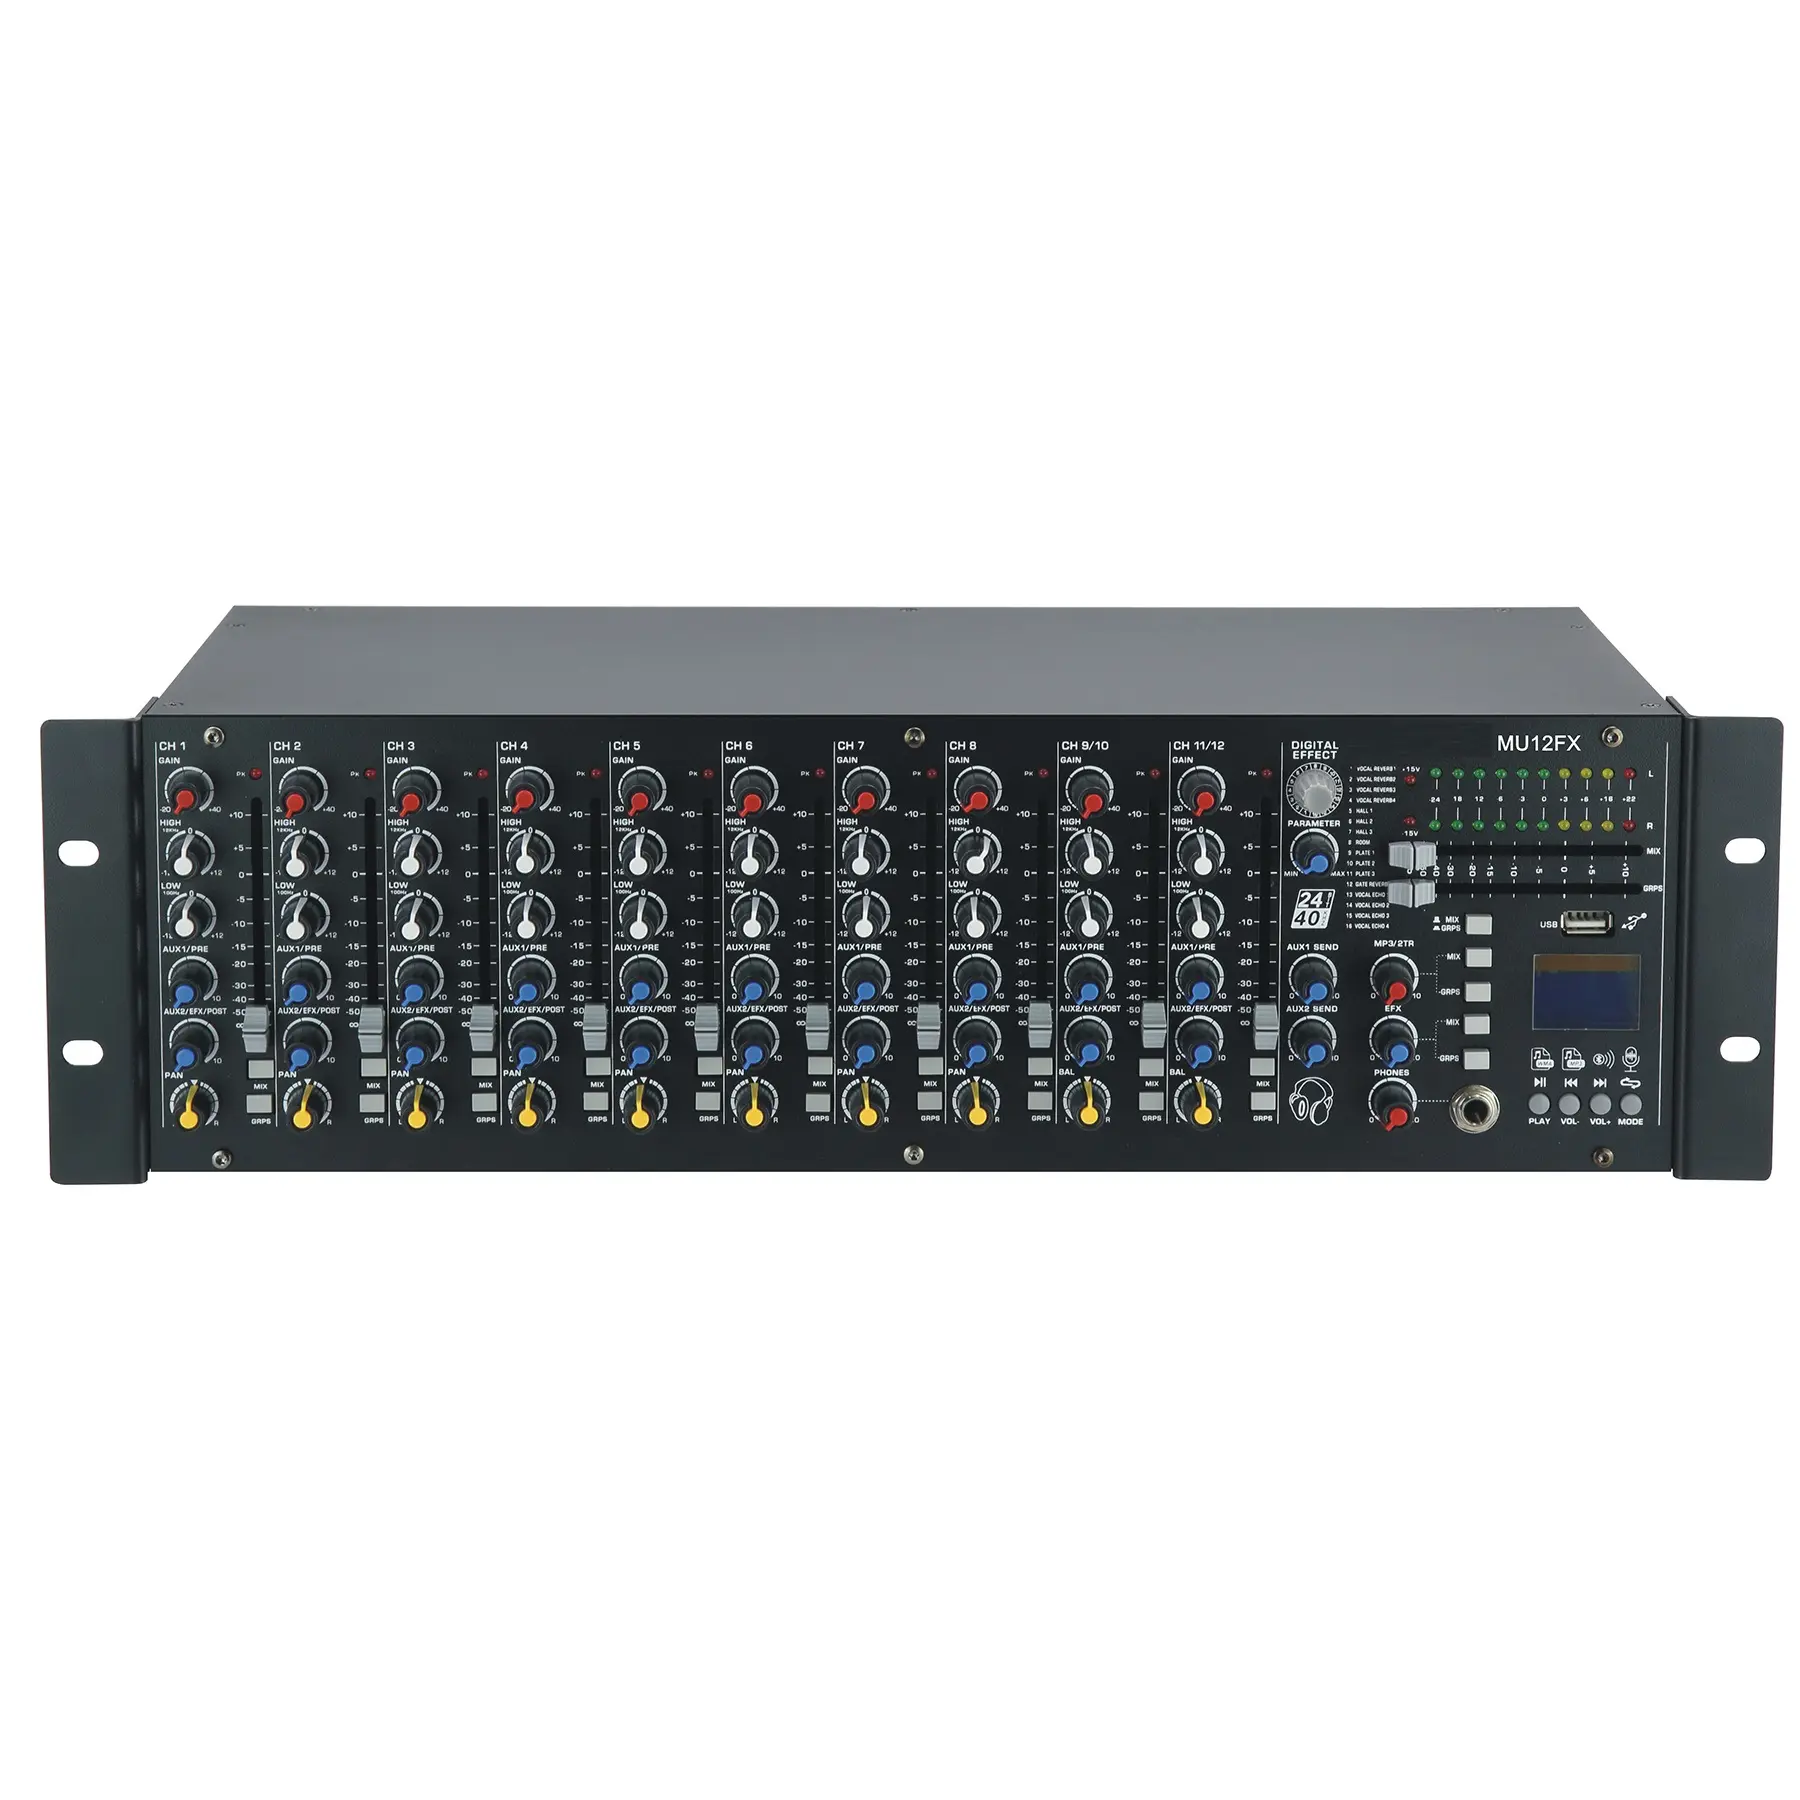 OEM nhà máy 12 kênh âm thanh mixer Console âm thanh khác thiết bị âm thanh chuyên nghiệp Rack gắn trộn giao diện điều khiển cho kệ mu12fx